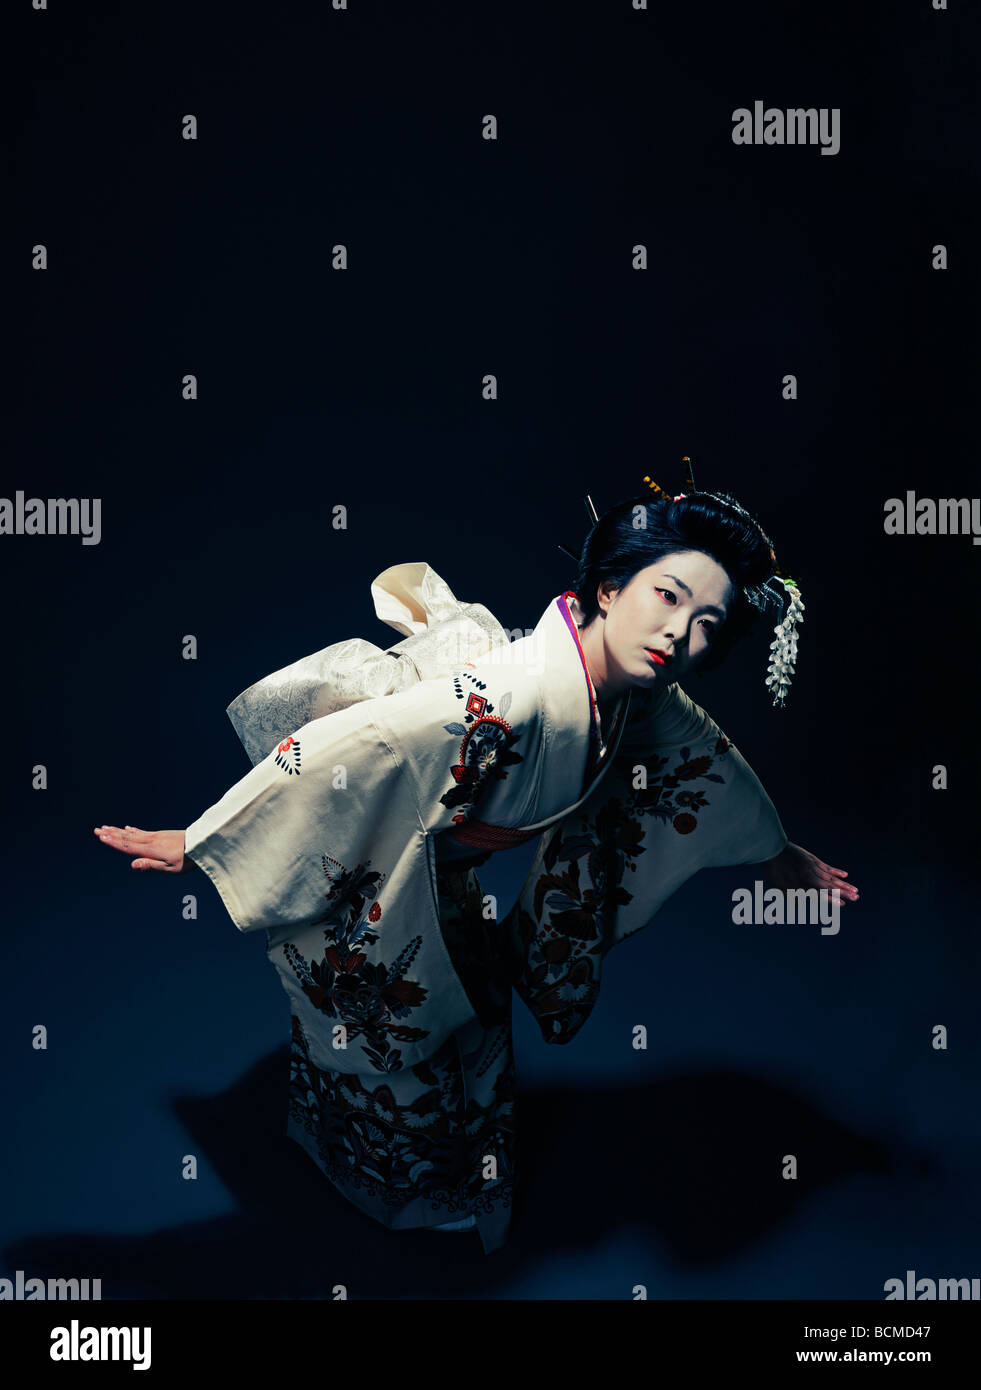 Poupée Mignonne Dans Le Kimono Une Poupée Mignonne S'habille Dans Un Kimono  Rouge Image stock - Image du asiatique, beau: 117180701